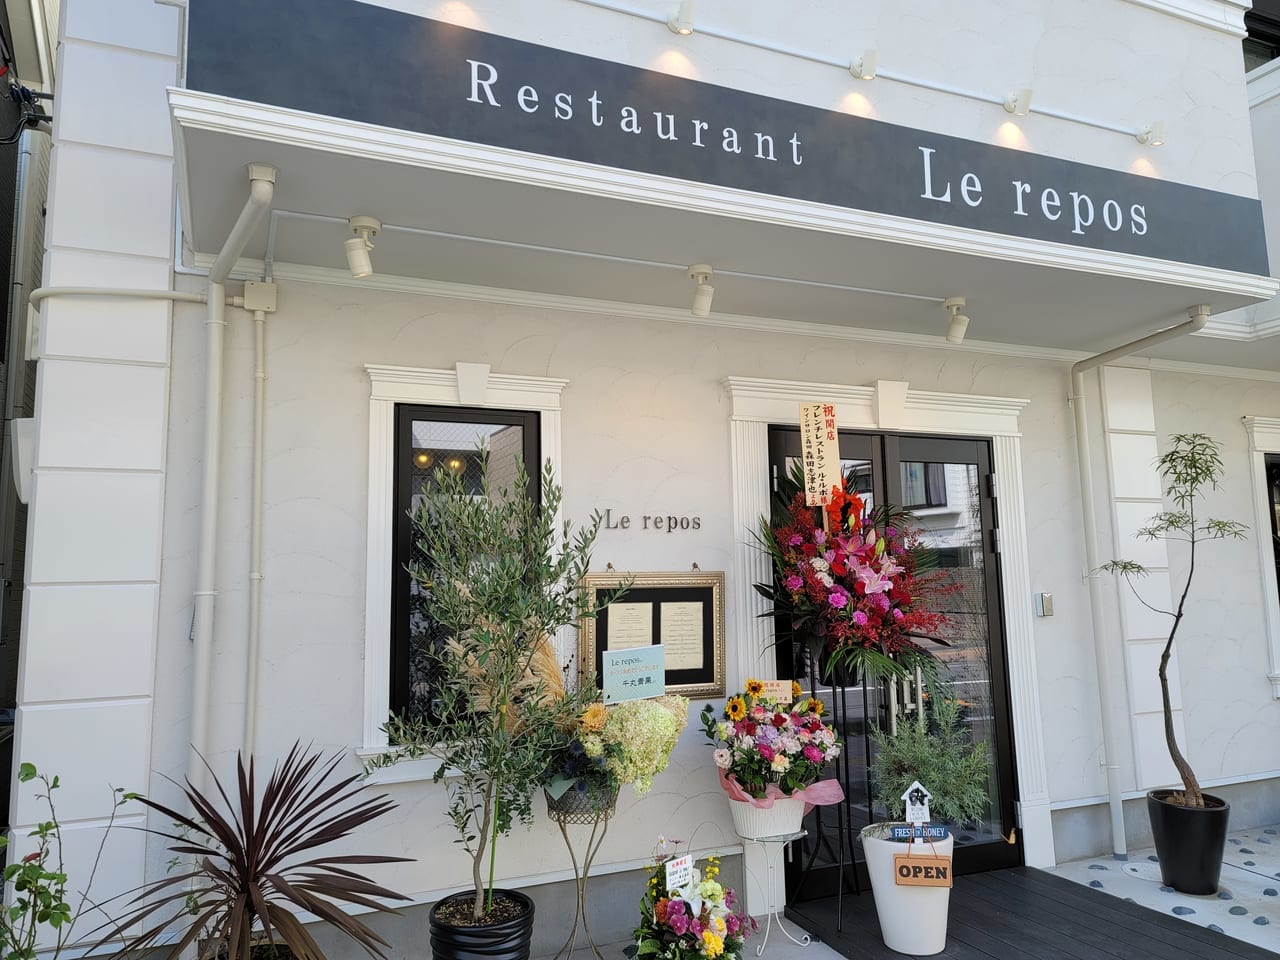 Restaurant Le repos